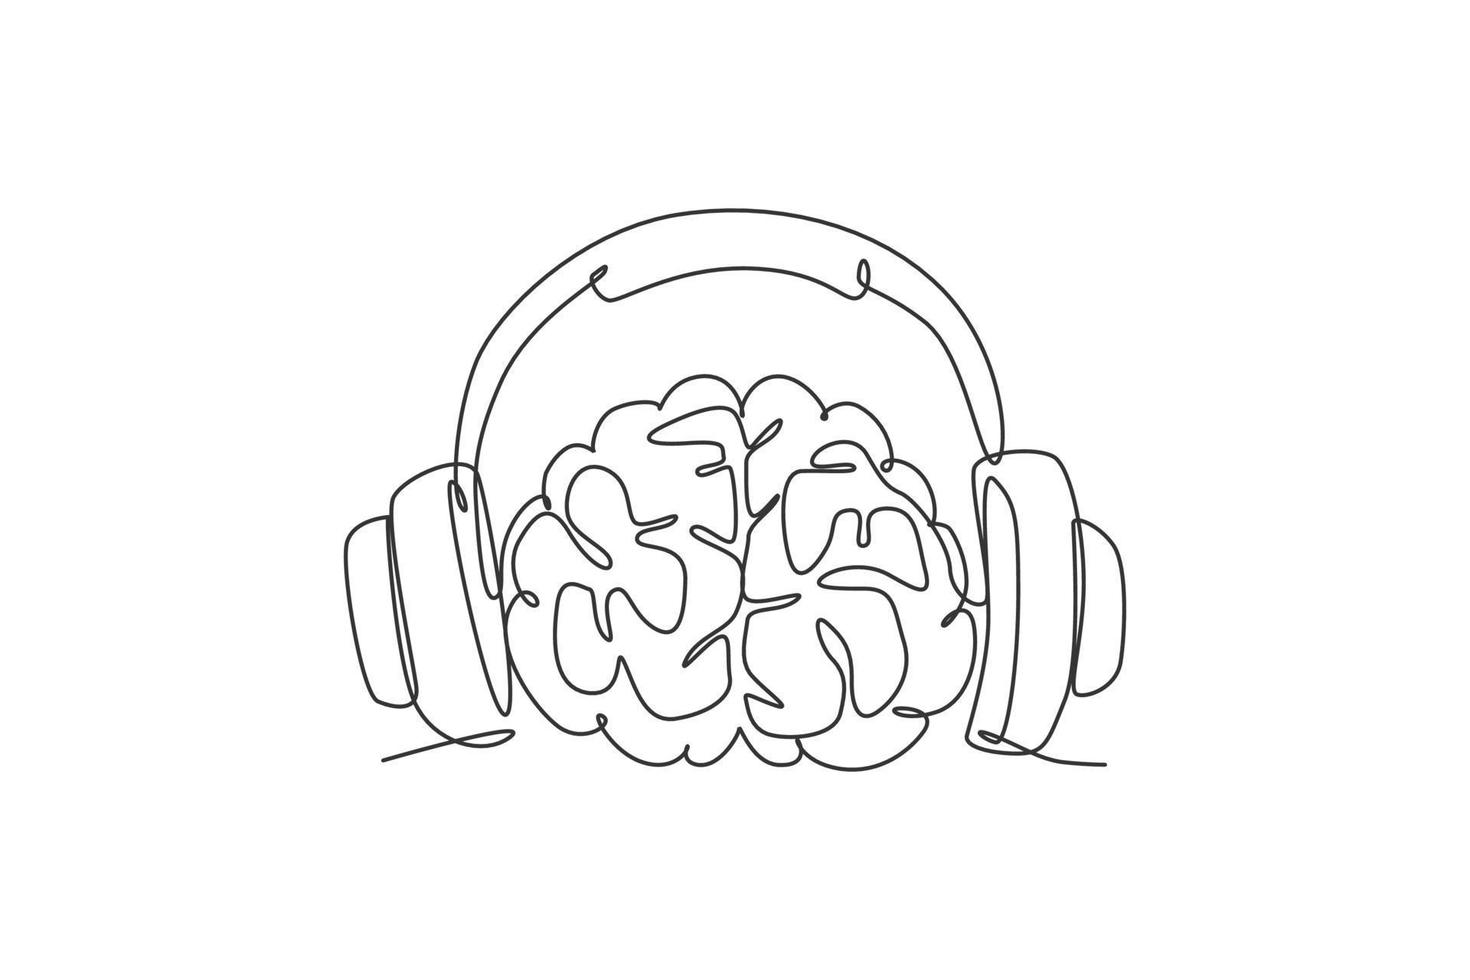 einzelne durchgehende Strichzeichnung des menschlichen Gehirns, das Musikbeat für das Logo des Musikunternehmens hört. Smart Audio dj Logo Symbol Konzept. moderne eine linie zeichnen grafikdesign-vektorillustration vektor